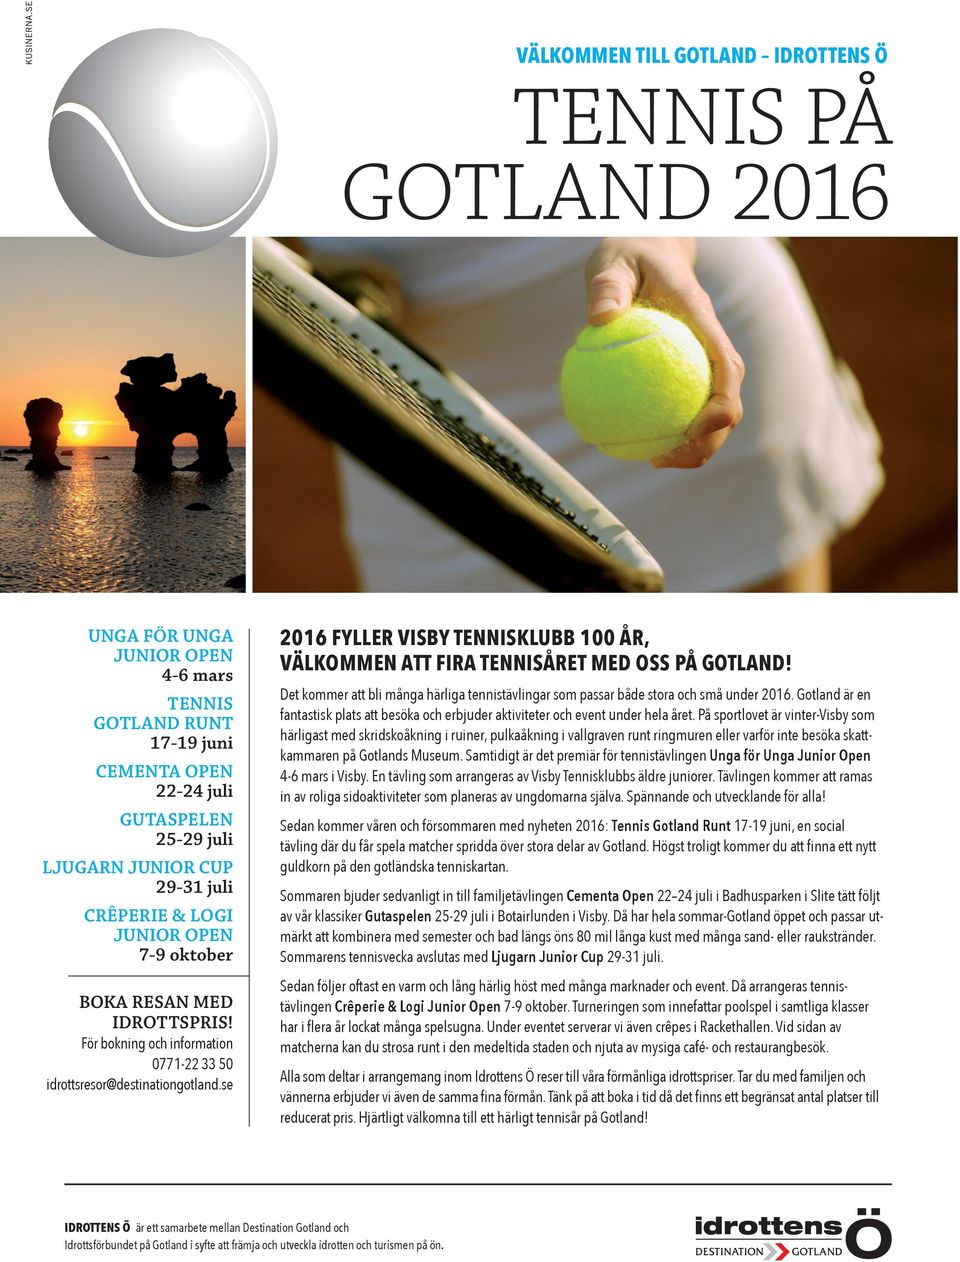 Det kommer att bli många härliga tennistävlingar som passar både stora och små under 2016. Gotland är en fantastisk plats att besöka och erbjuder aktiviteter och event under hela året.